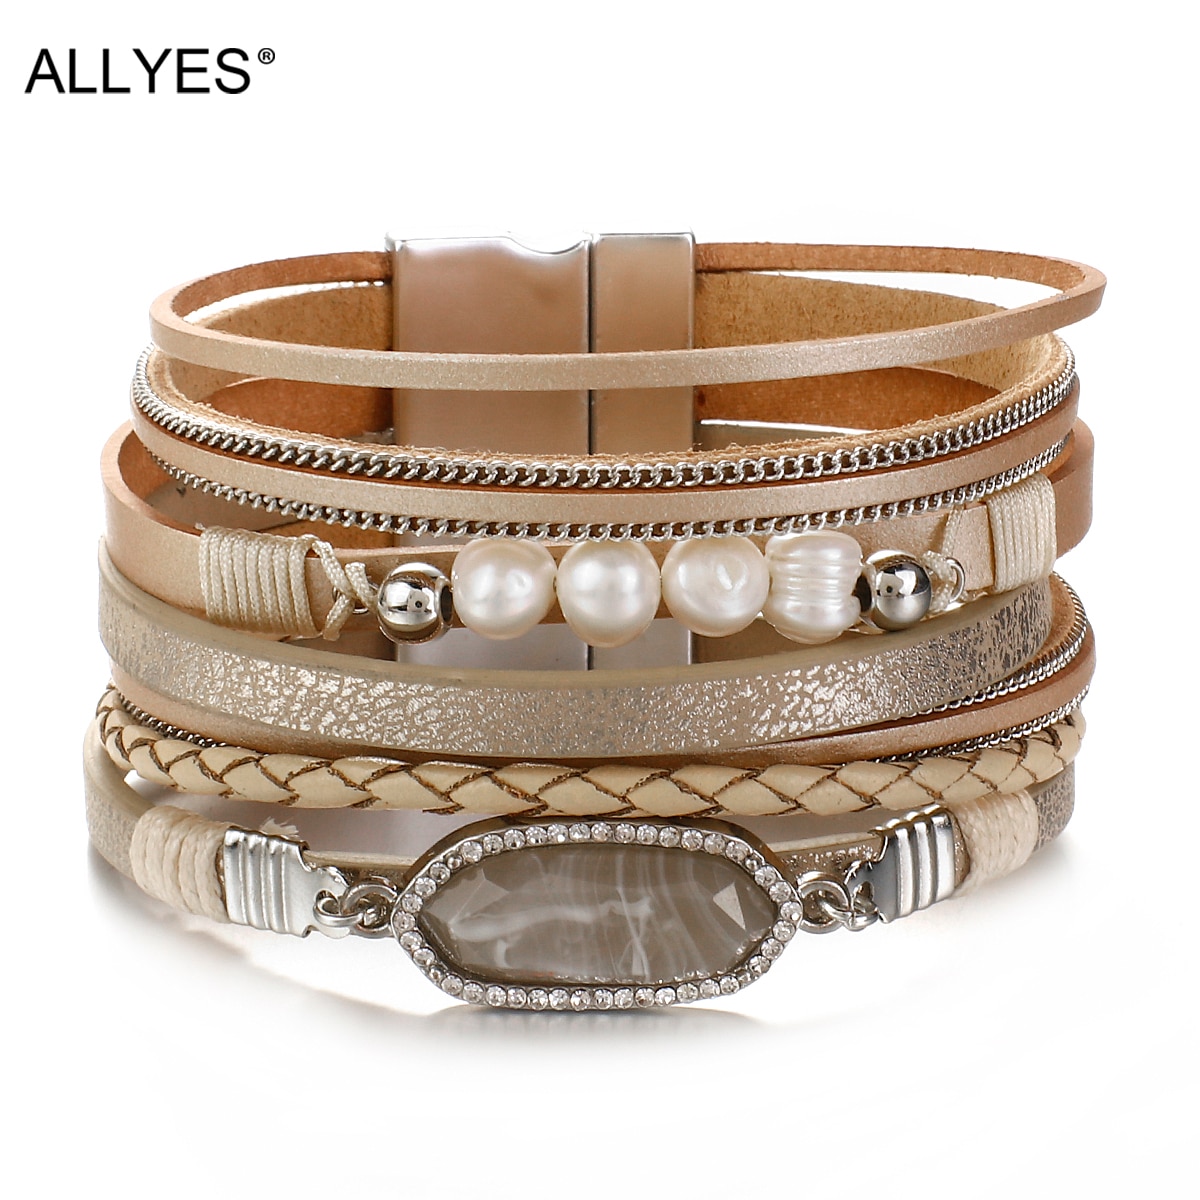 Allyes Resin Charm Parel Kralen Lederen Armbanden Voor Vrouwen Multilayer Wrap Armband Zomer Sieraden Huwelijkscadeau